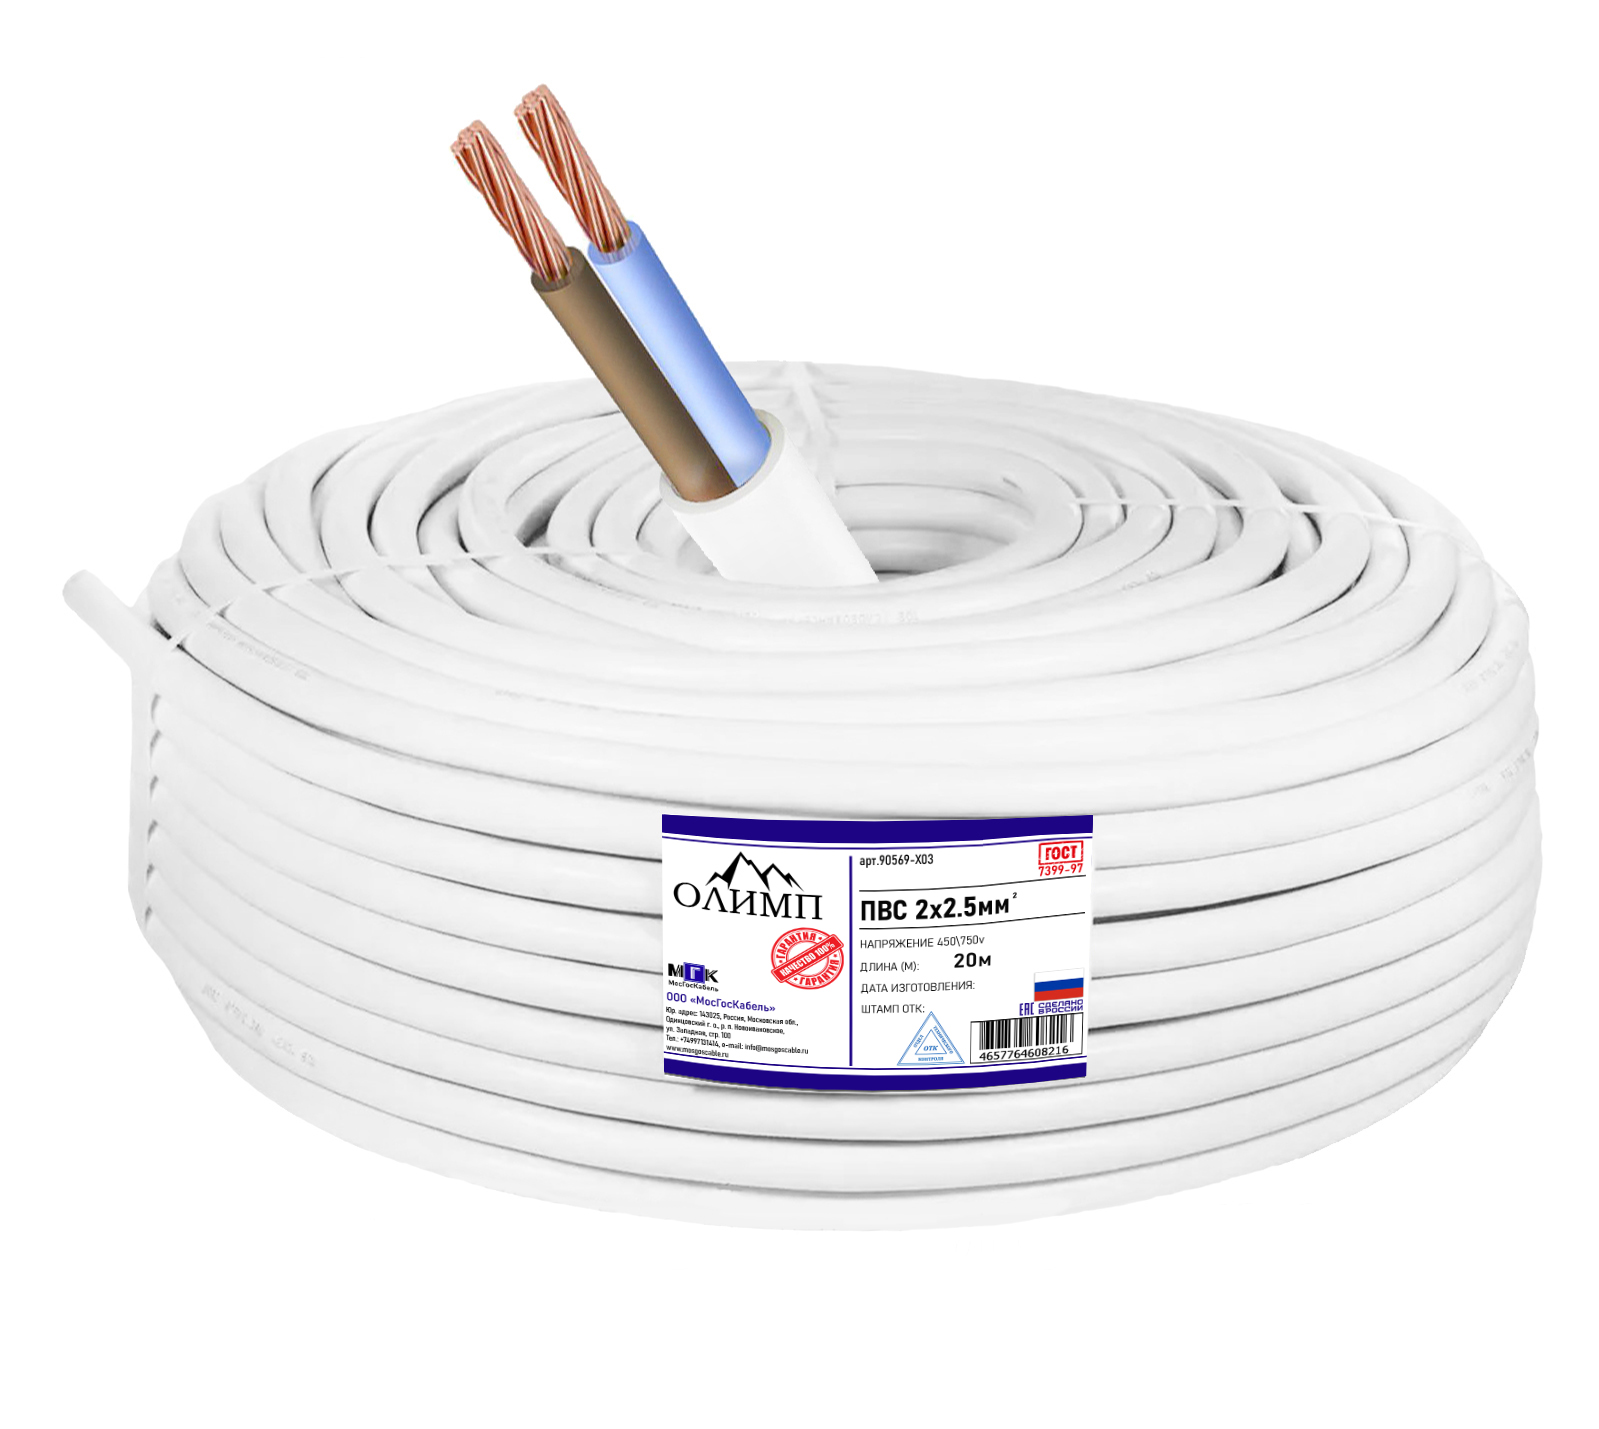 Силовой кабель ПВС ОЛИМП ГОСТ 2x2.5мм 20м 90569-X03 толстовка олимп